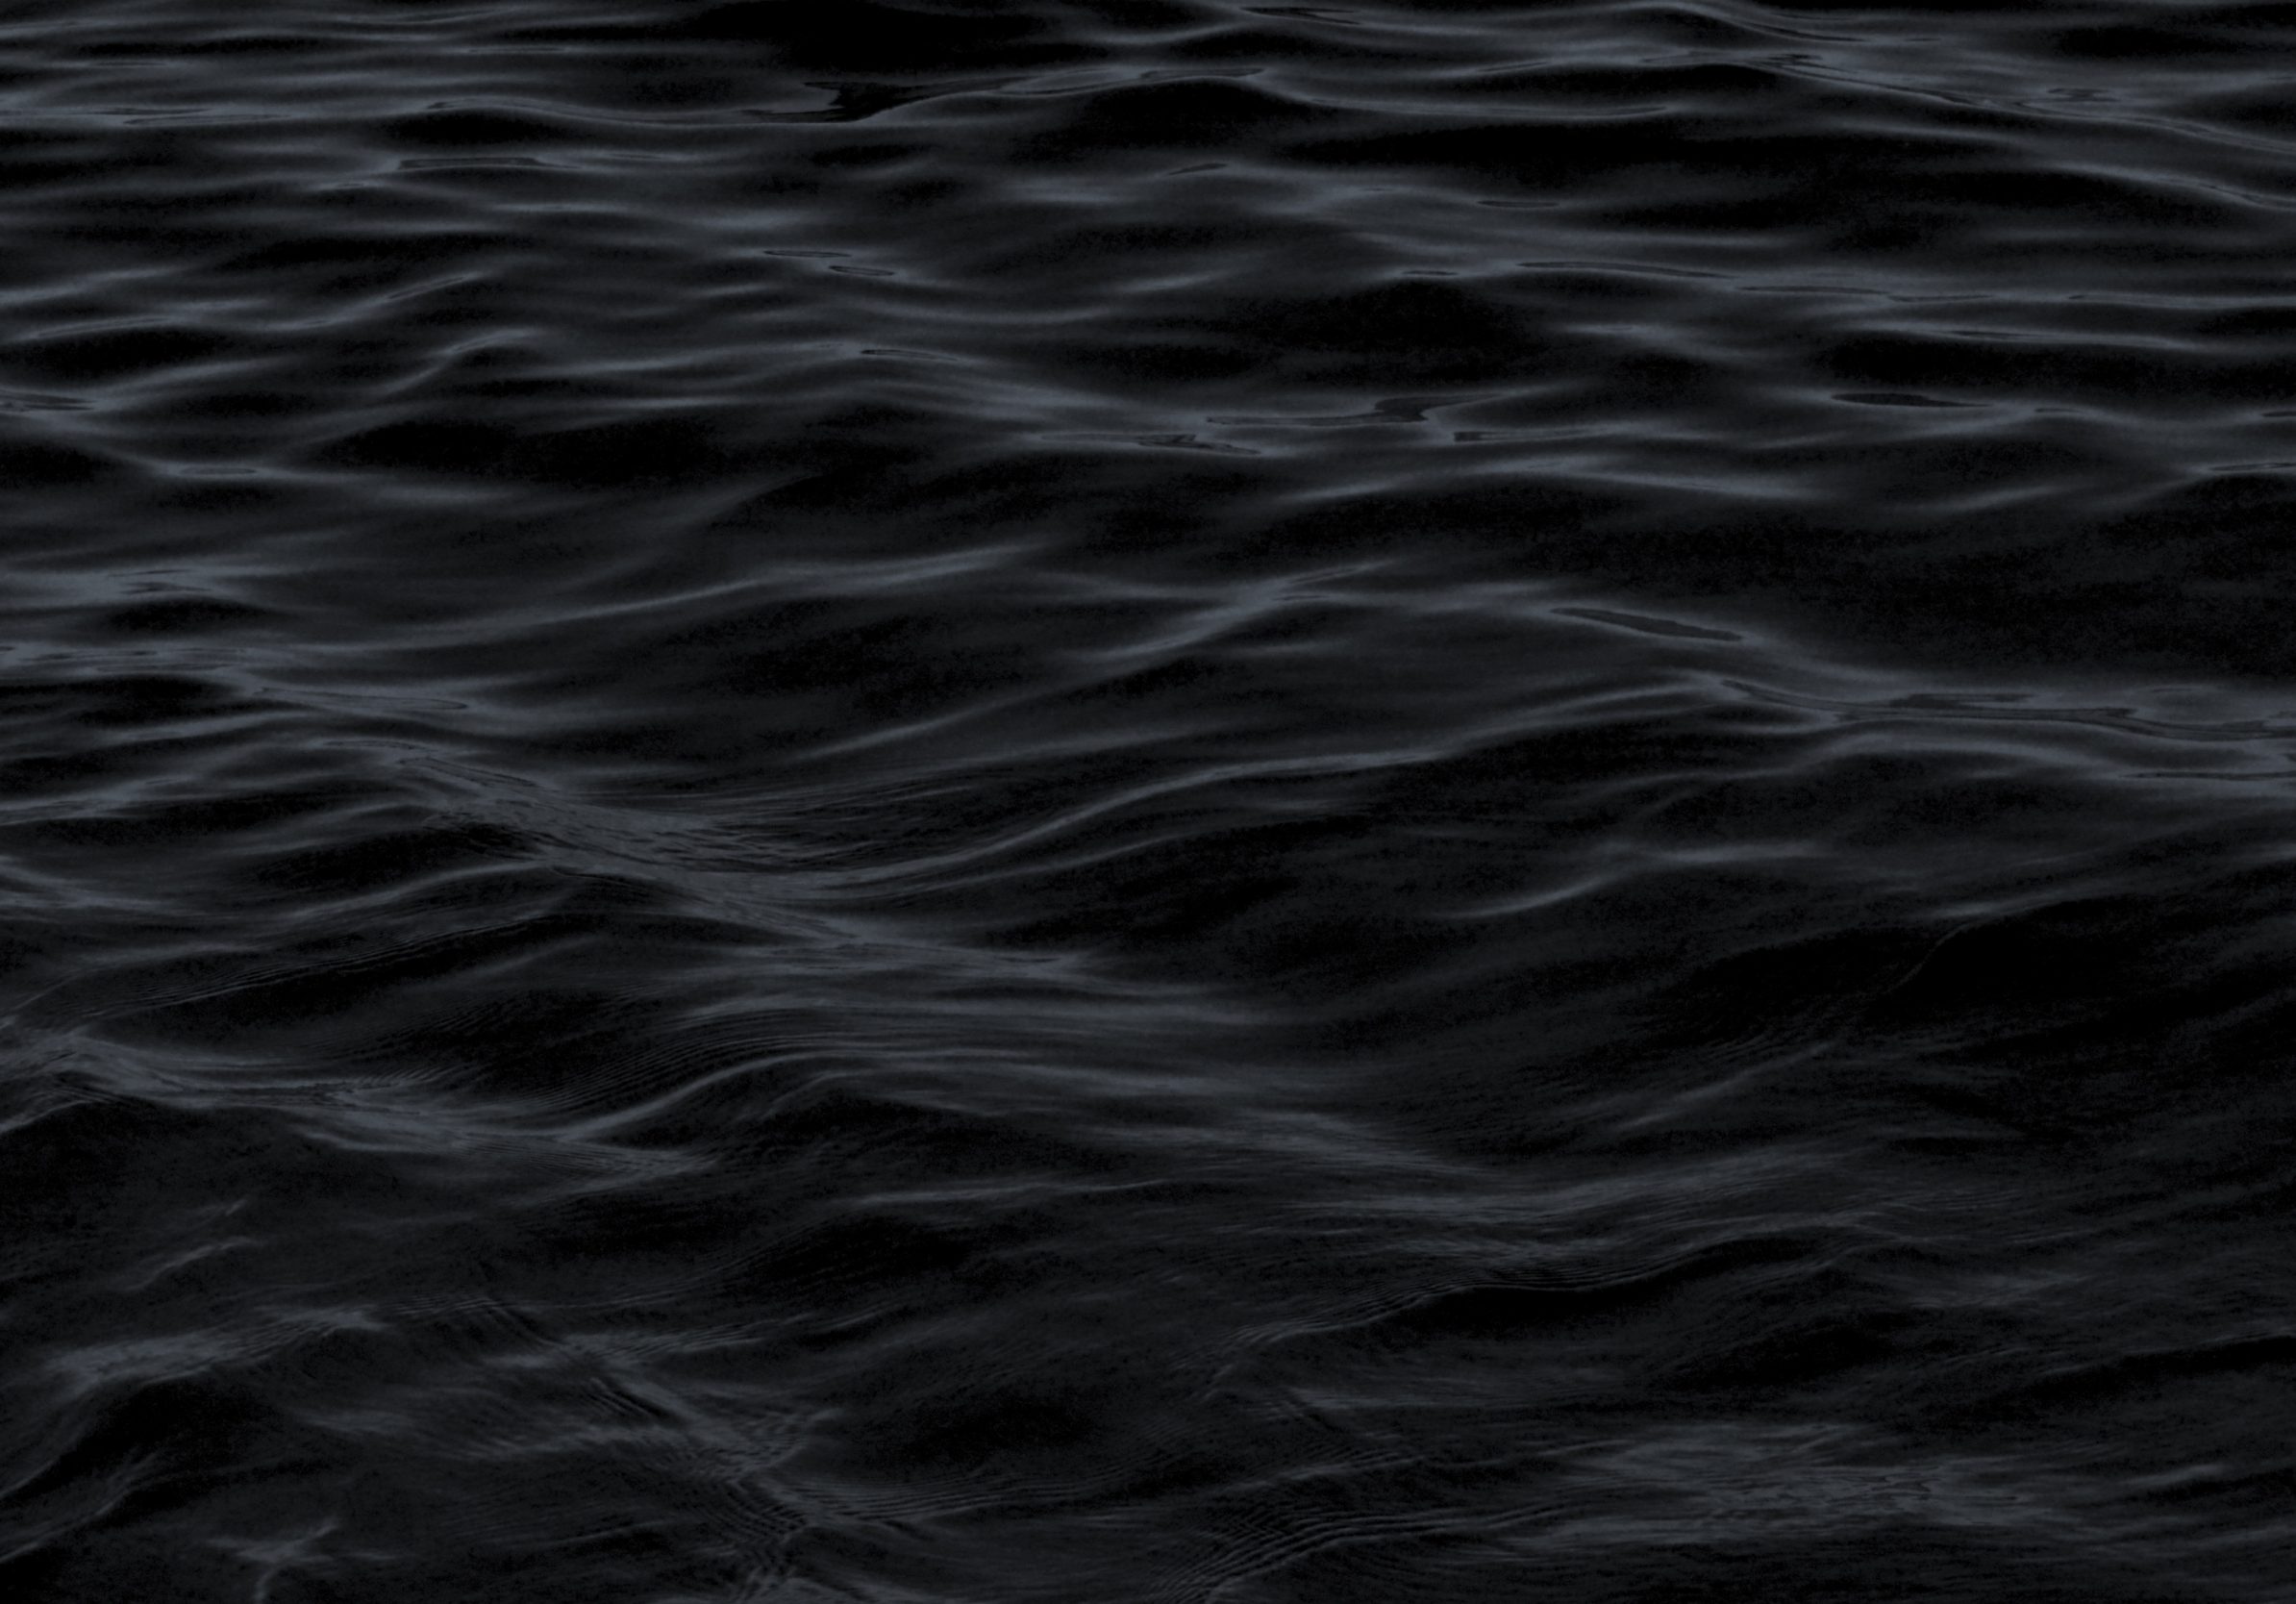 2388x1668 iPad Pro wallpapers Dark Water Waves Sea Pattern iPad Wallpaper 2388x1668 pixels resolution